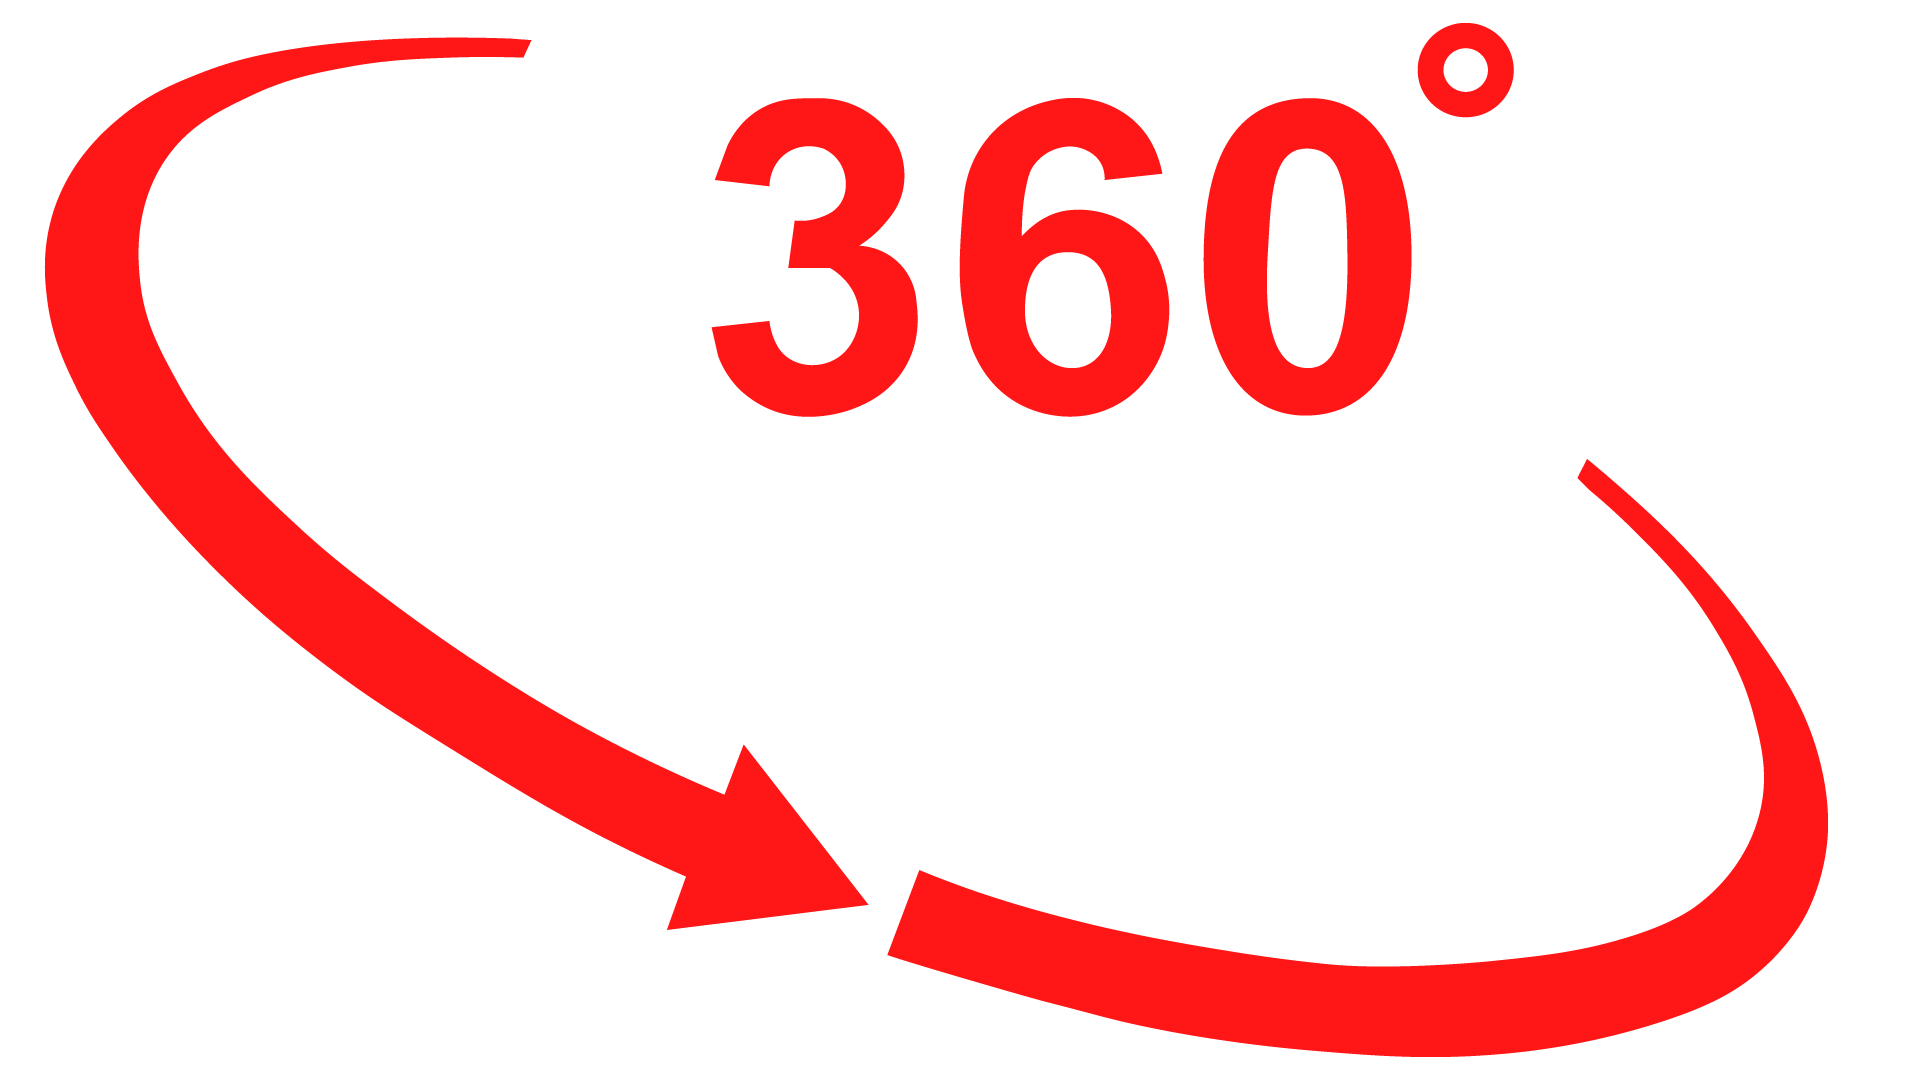 Consultoría Integral 360 y Asociados GH